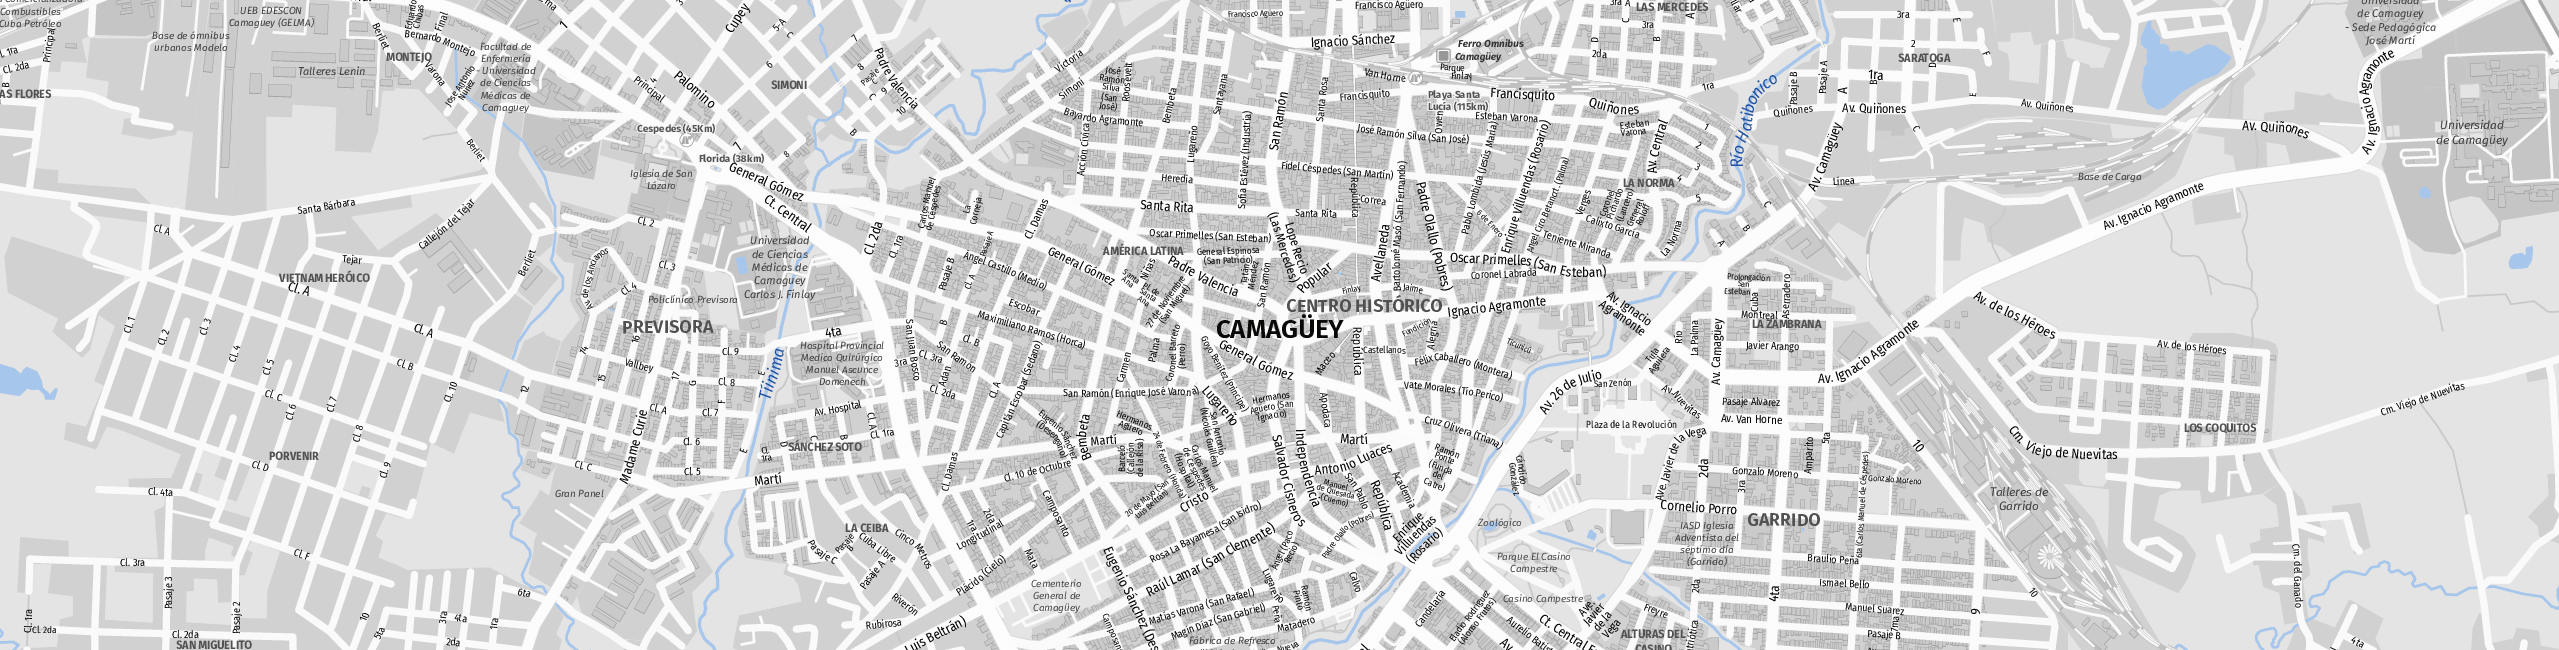 Stadtplan Camagüey zum Downloaden.